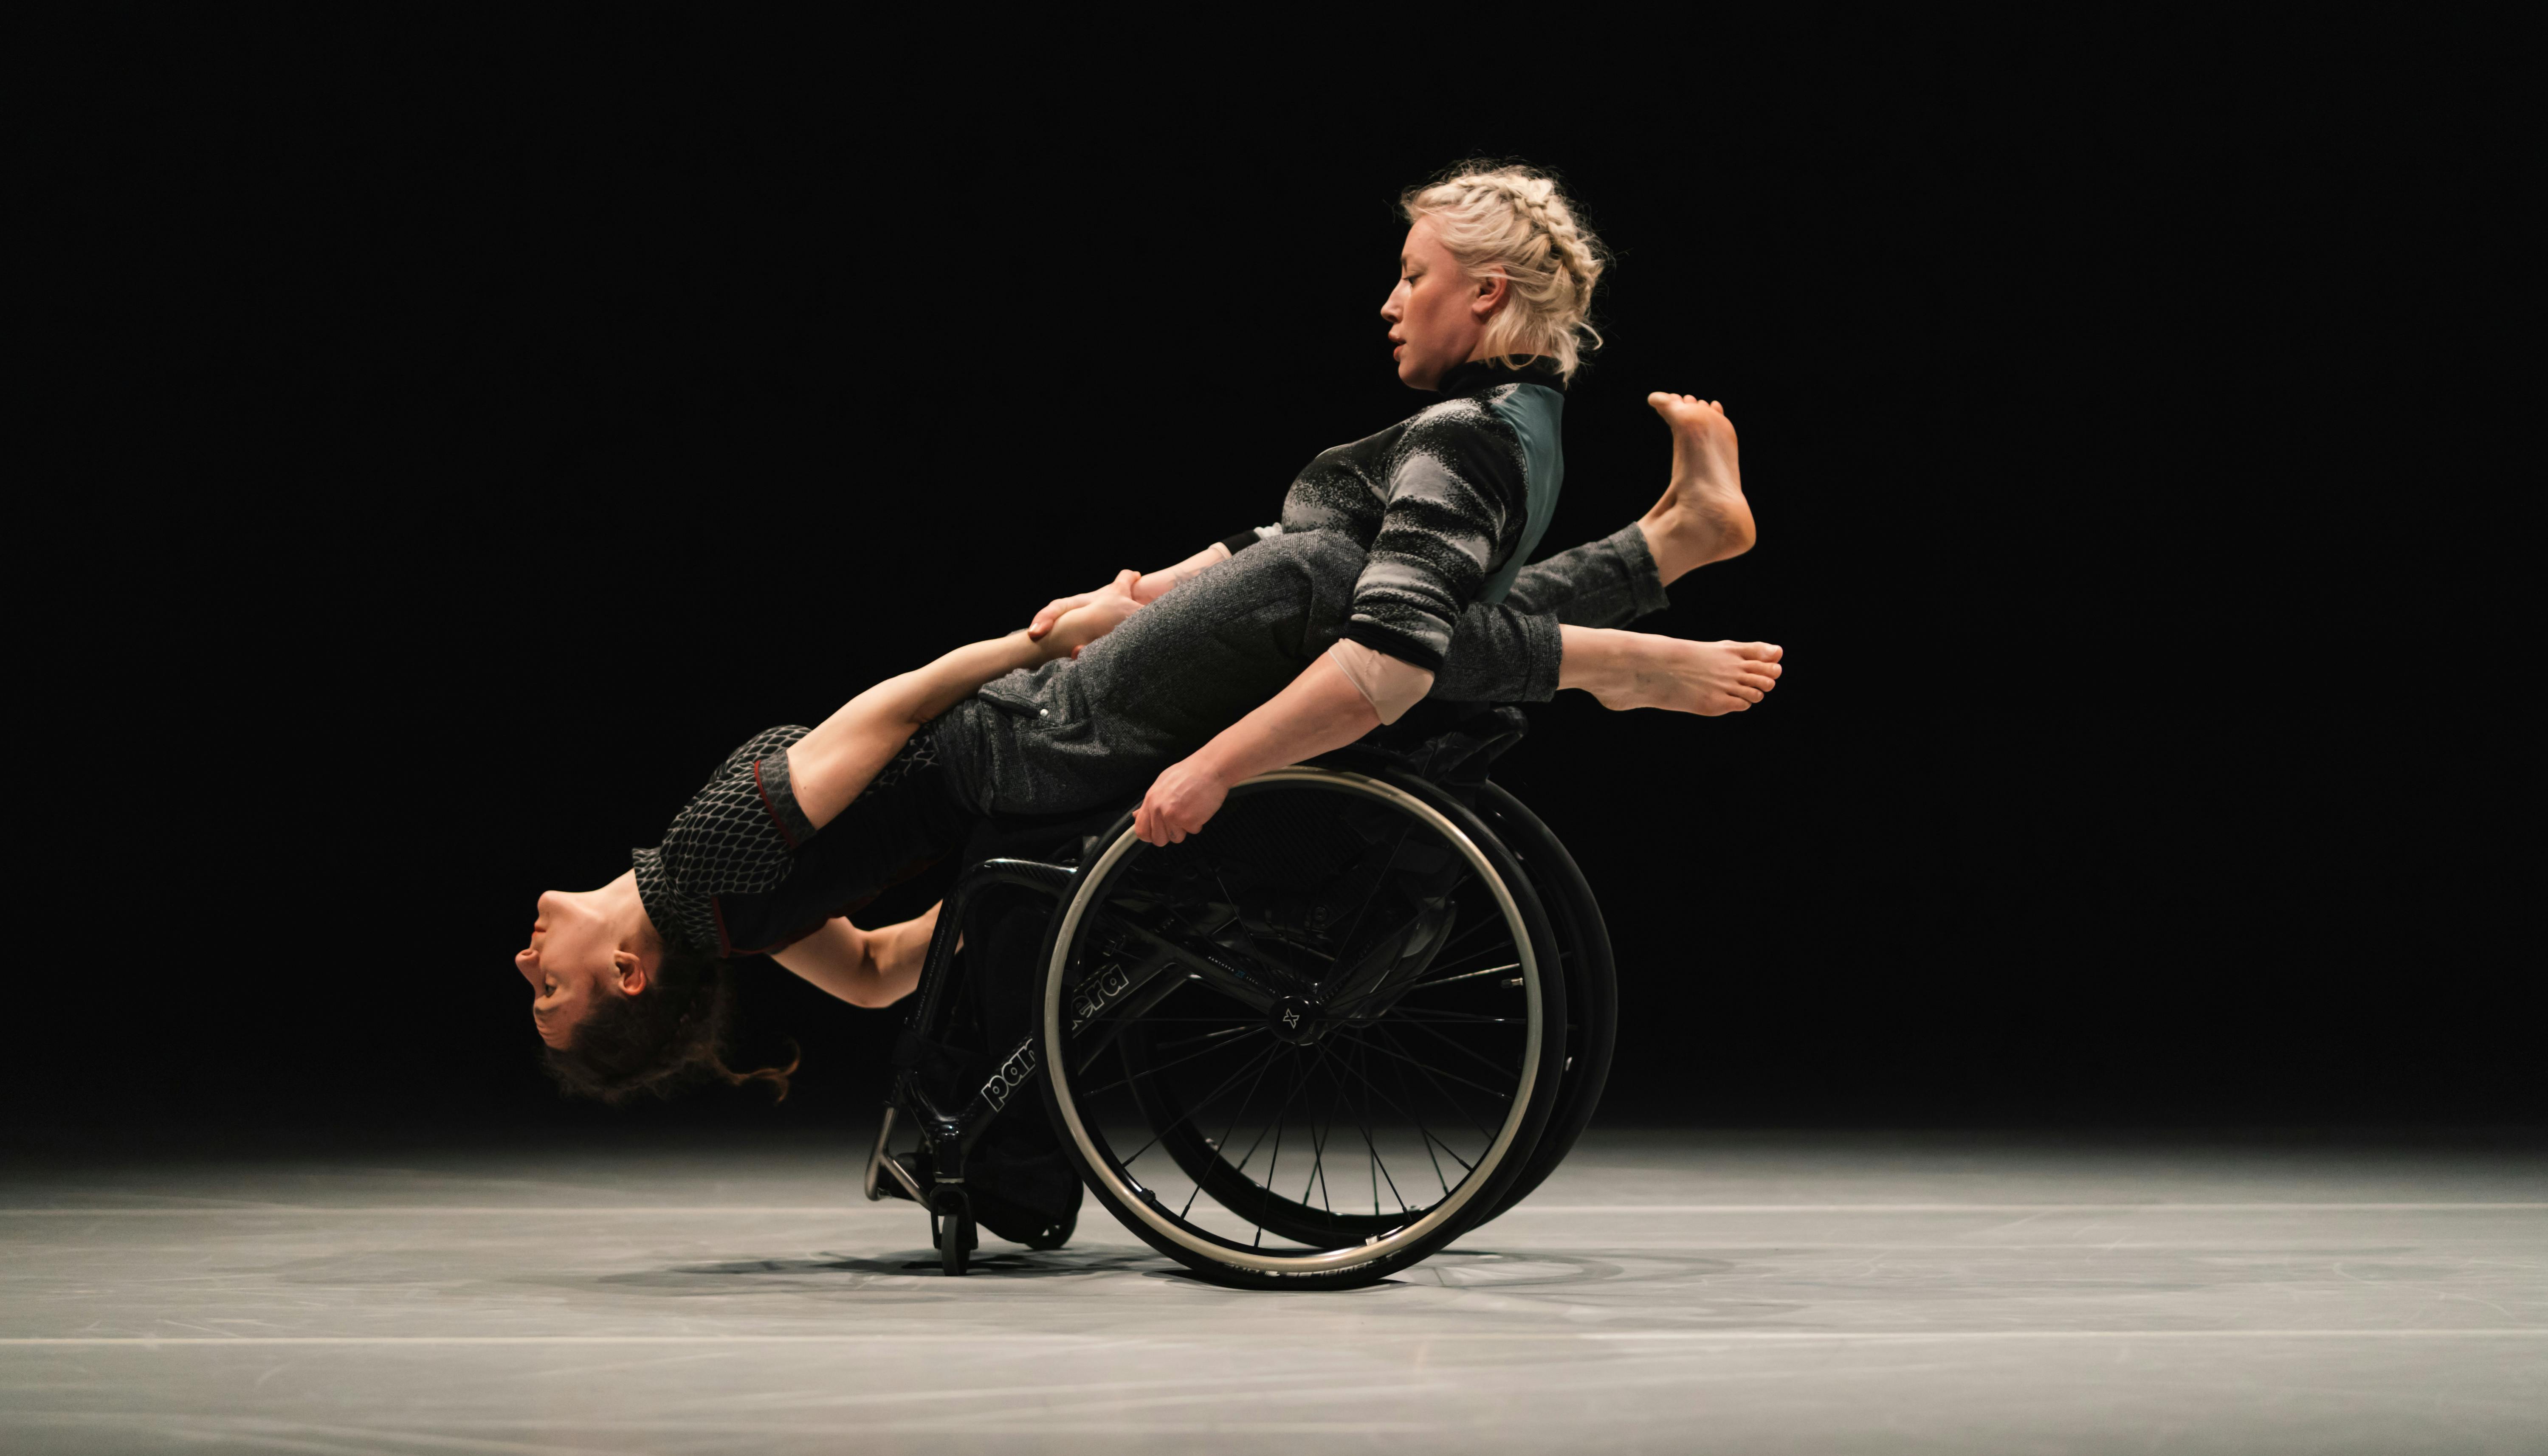 Una danzatrice con disabilità regge in equilibrio perpendicolare un'altra danzatrice.